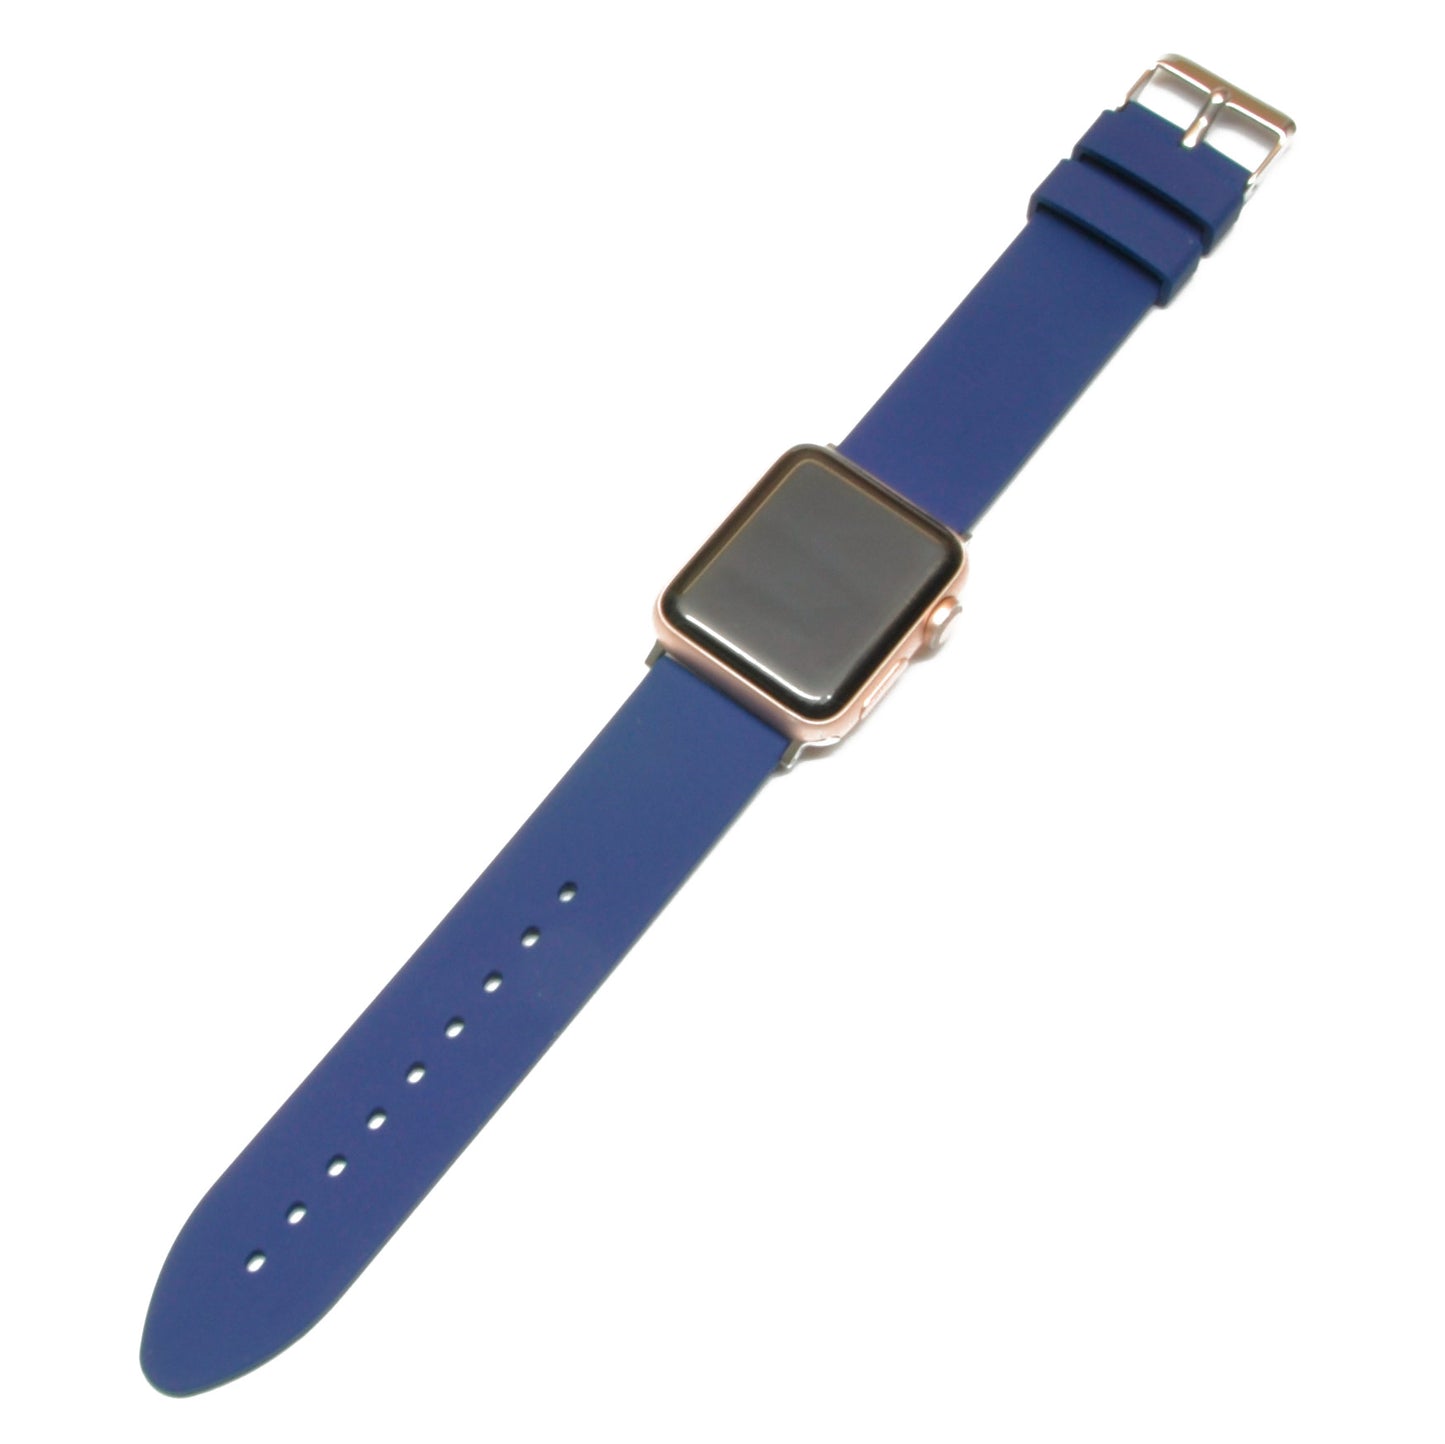 Gummireim til Apple Watch | Blå | Adapter inkludert - Klokkr